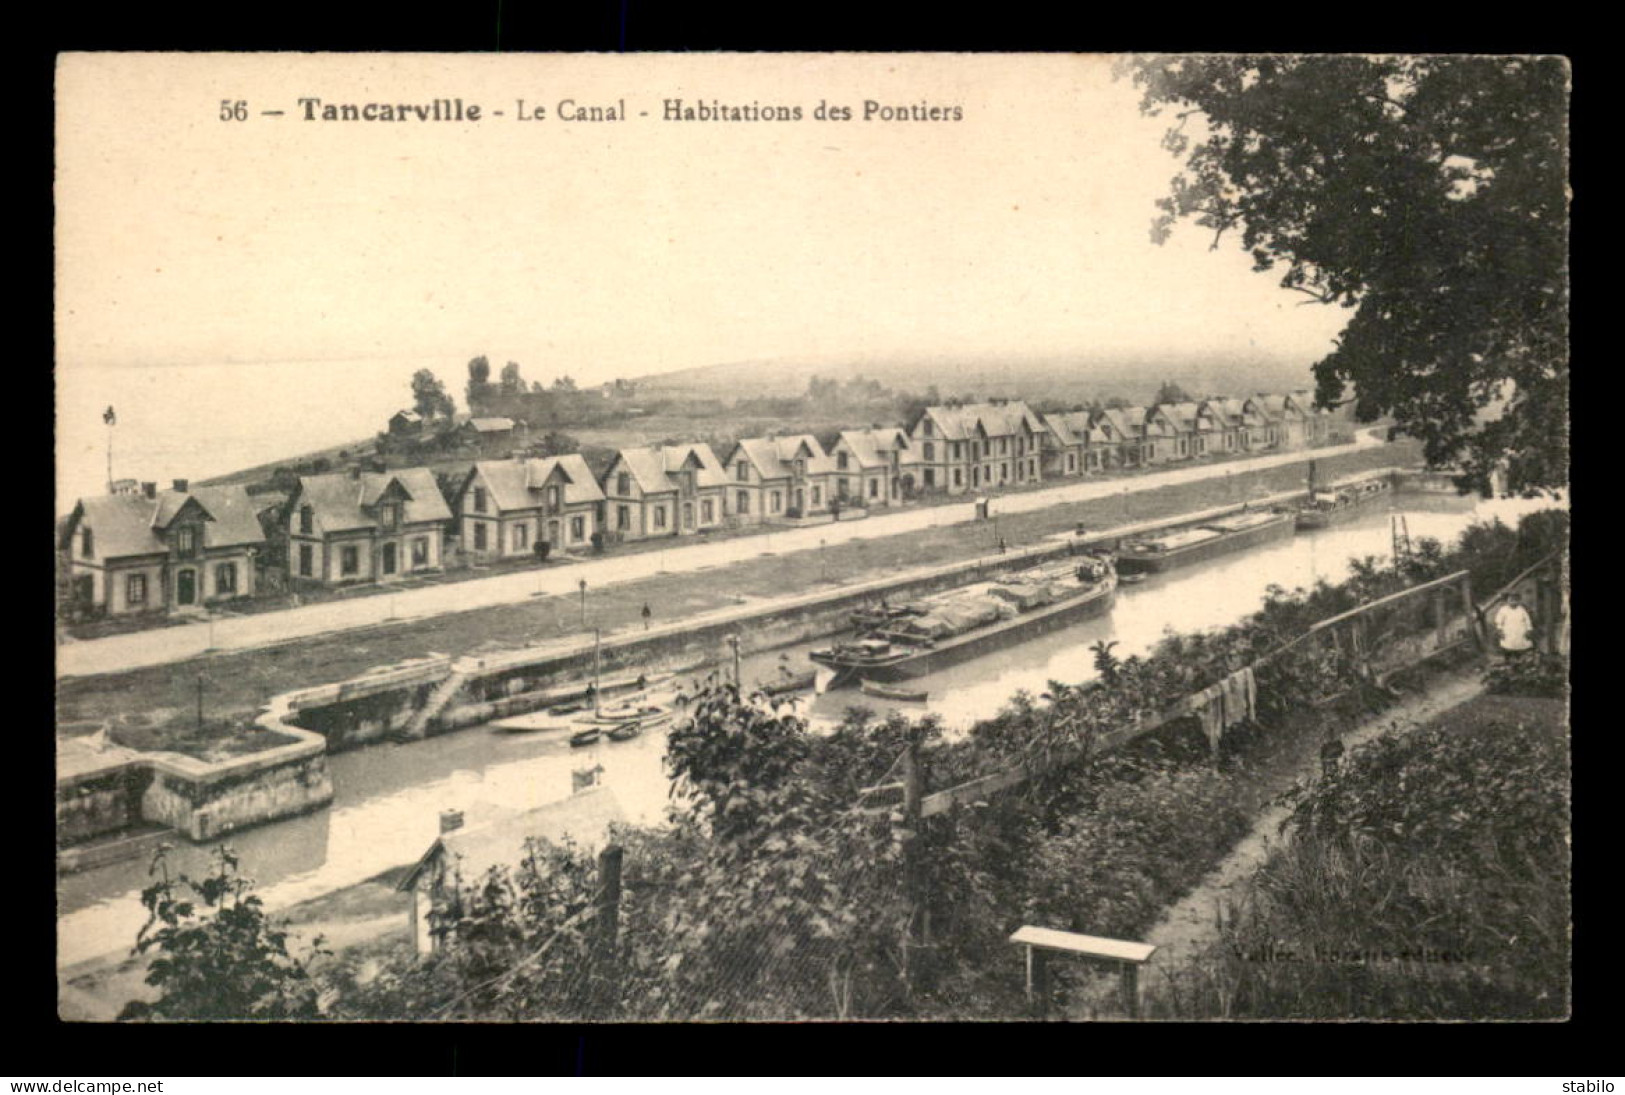 76 - TANCARVILLE - HABITATIONS DES PONTIERS - PENICHES - Tancarville